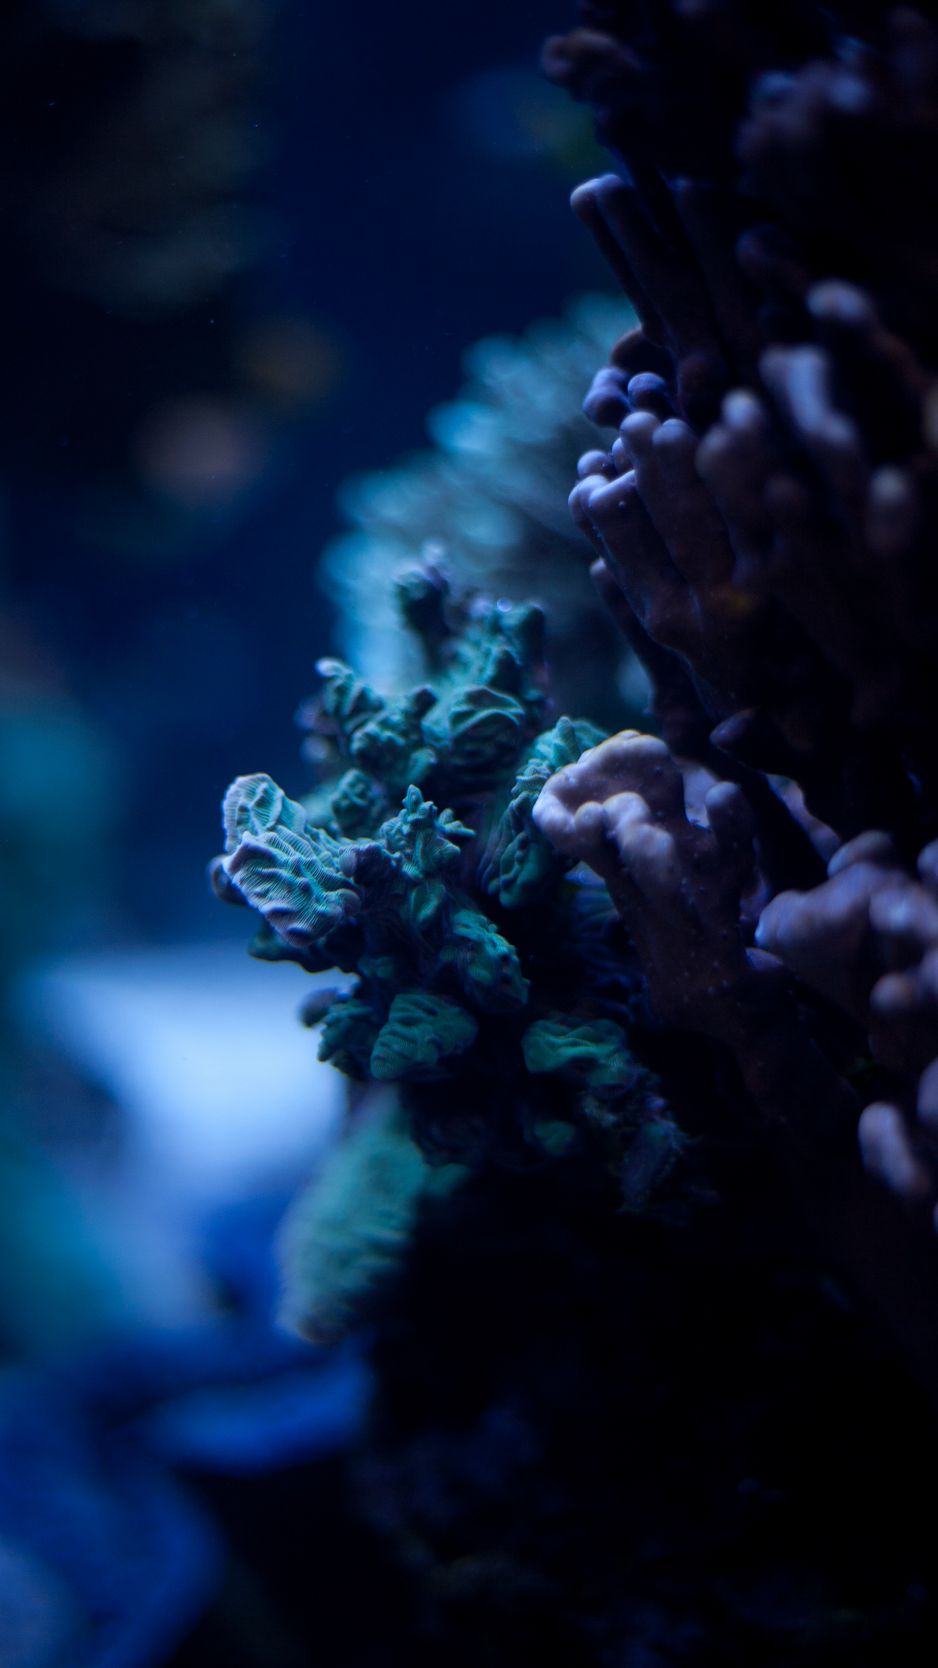 Thế giới dưới nước với đầy đủ sắc màu, những sinh vật kỳ lạ và đặc biệt là cảm giác thư giãn khi chiêm ngưỡng các loài sinh vật bơi lội trong đại dương. Cùng khám phá và chiêm ngưỡng những hình ảnh liên quan để cảm nhận trọn vẹn vẻ đẹp của thế giới dưới nước.